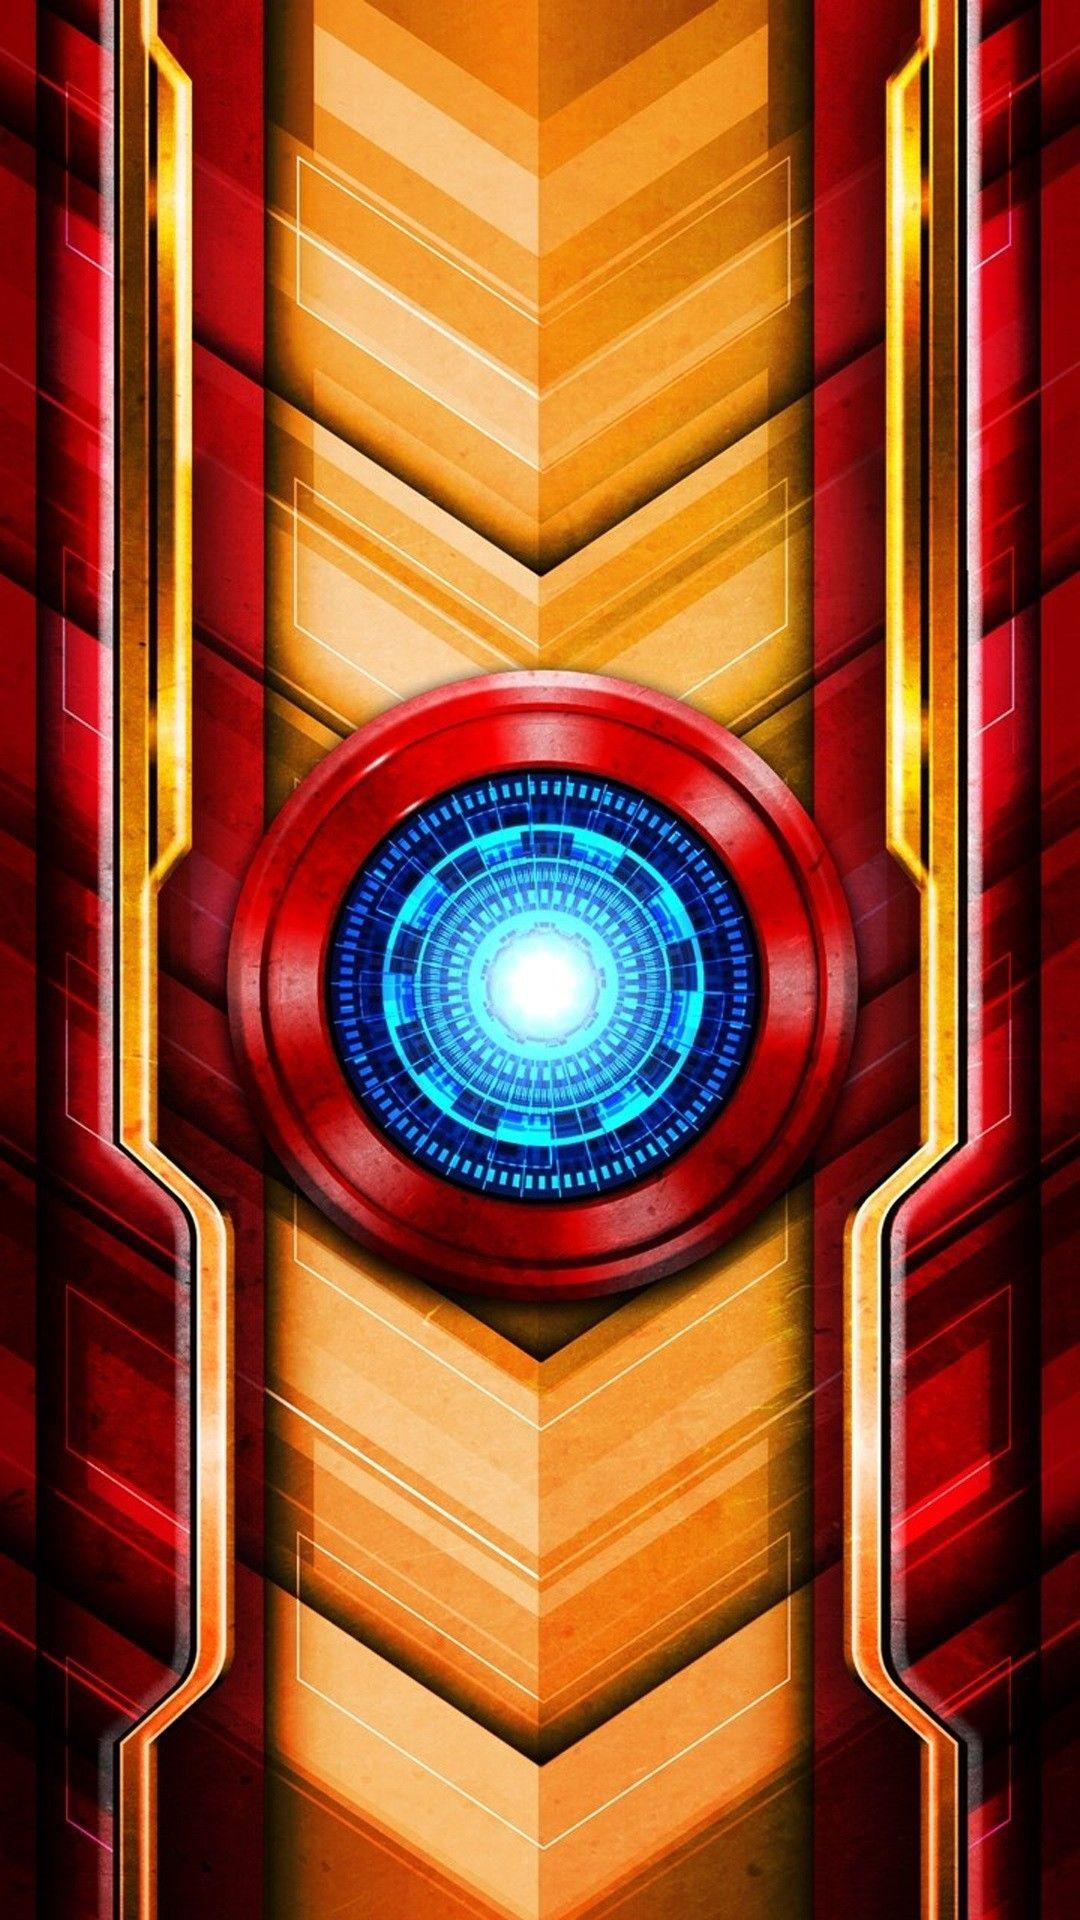 Iron Man Arc Reactor. Art. Marvel comics, Iron man